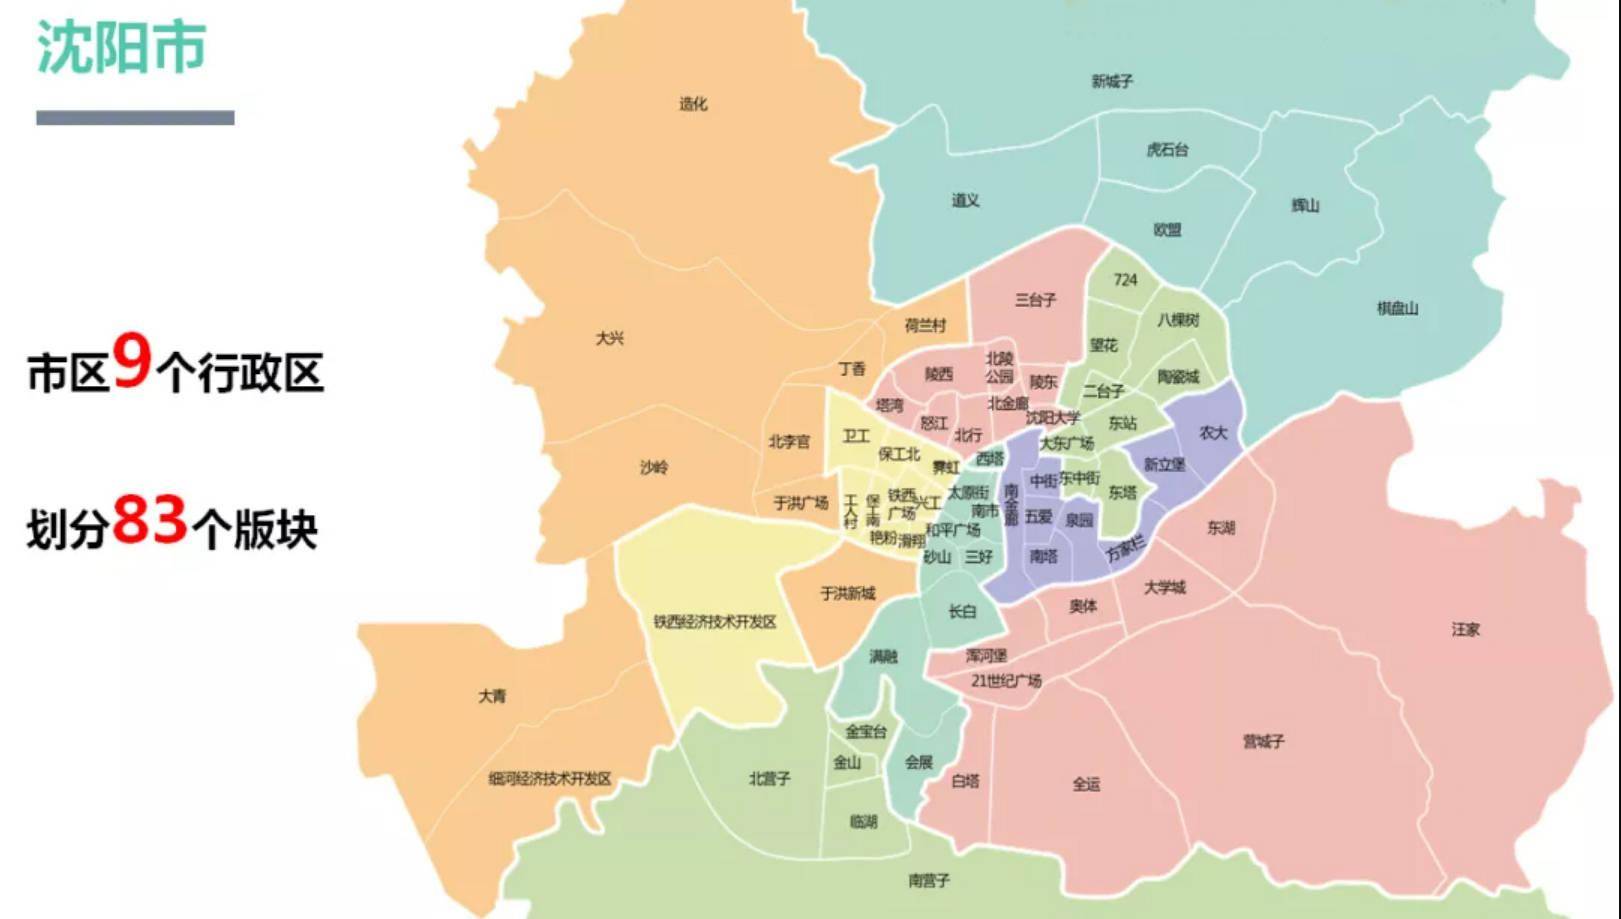 快讯:2021年沈阳市城市租赁市场报告发布 南金廊租金领先